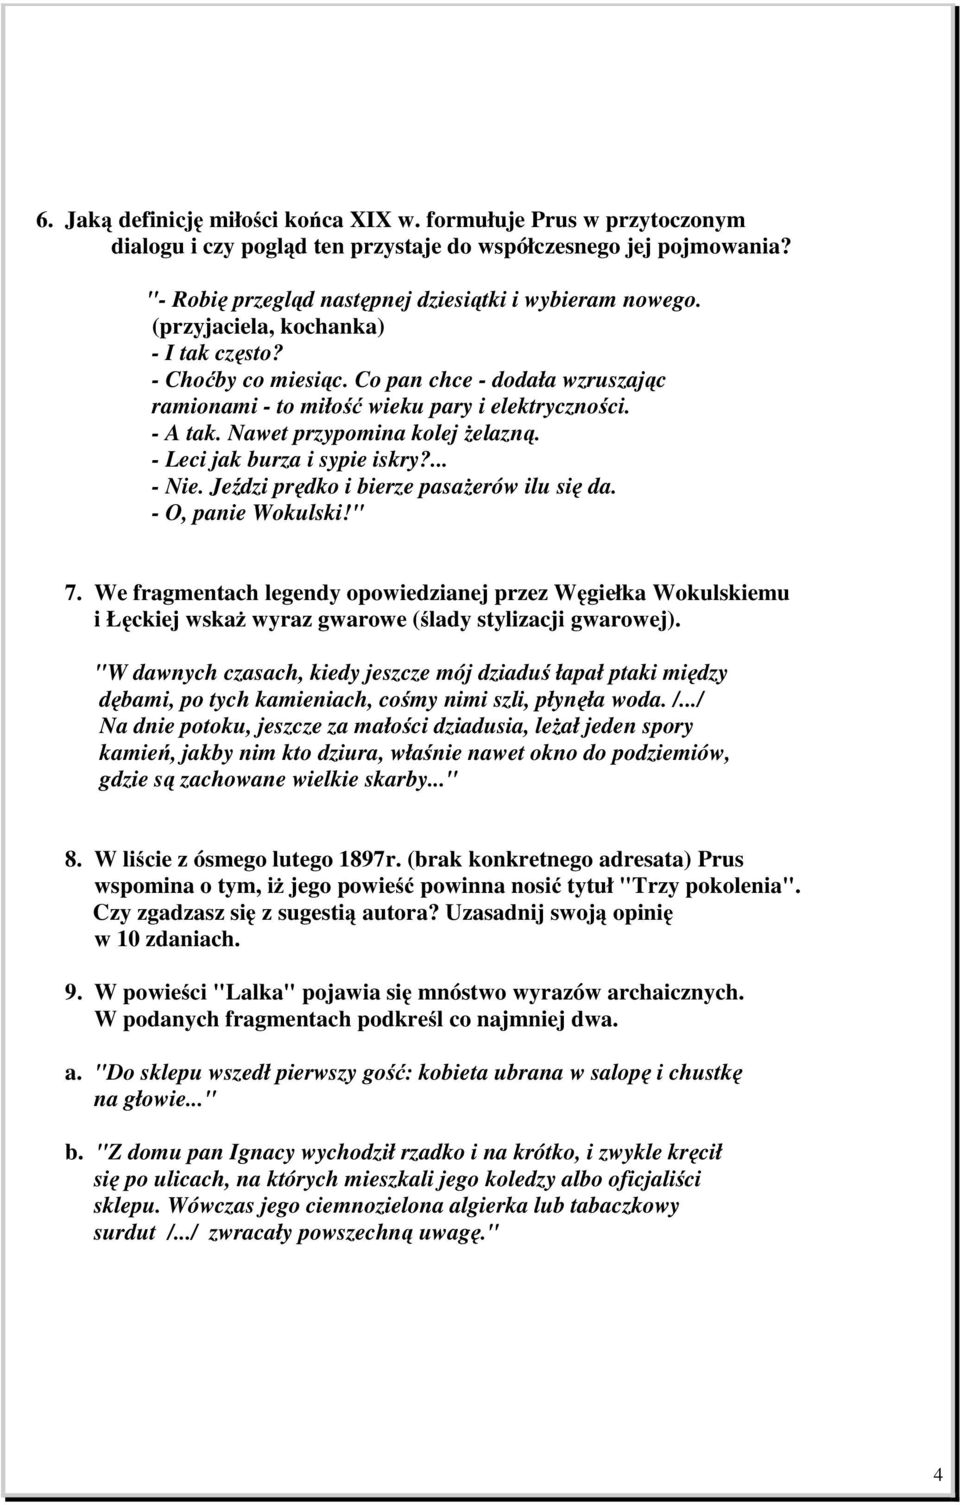 TEST SPRAWDZAJĄCY ZNAJOMOŚĆ LALKI BOLESŁAWA PRUSA - PDF Free Download